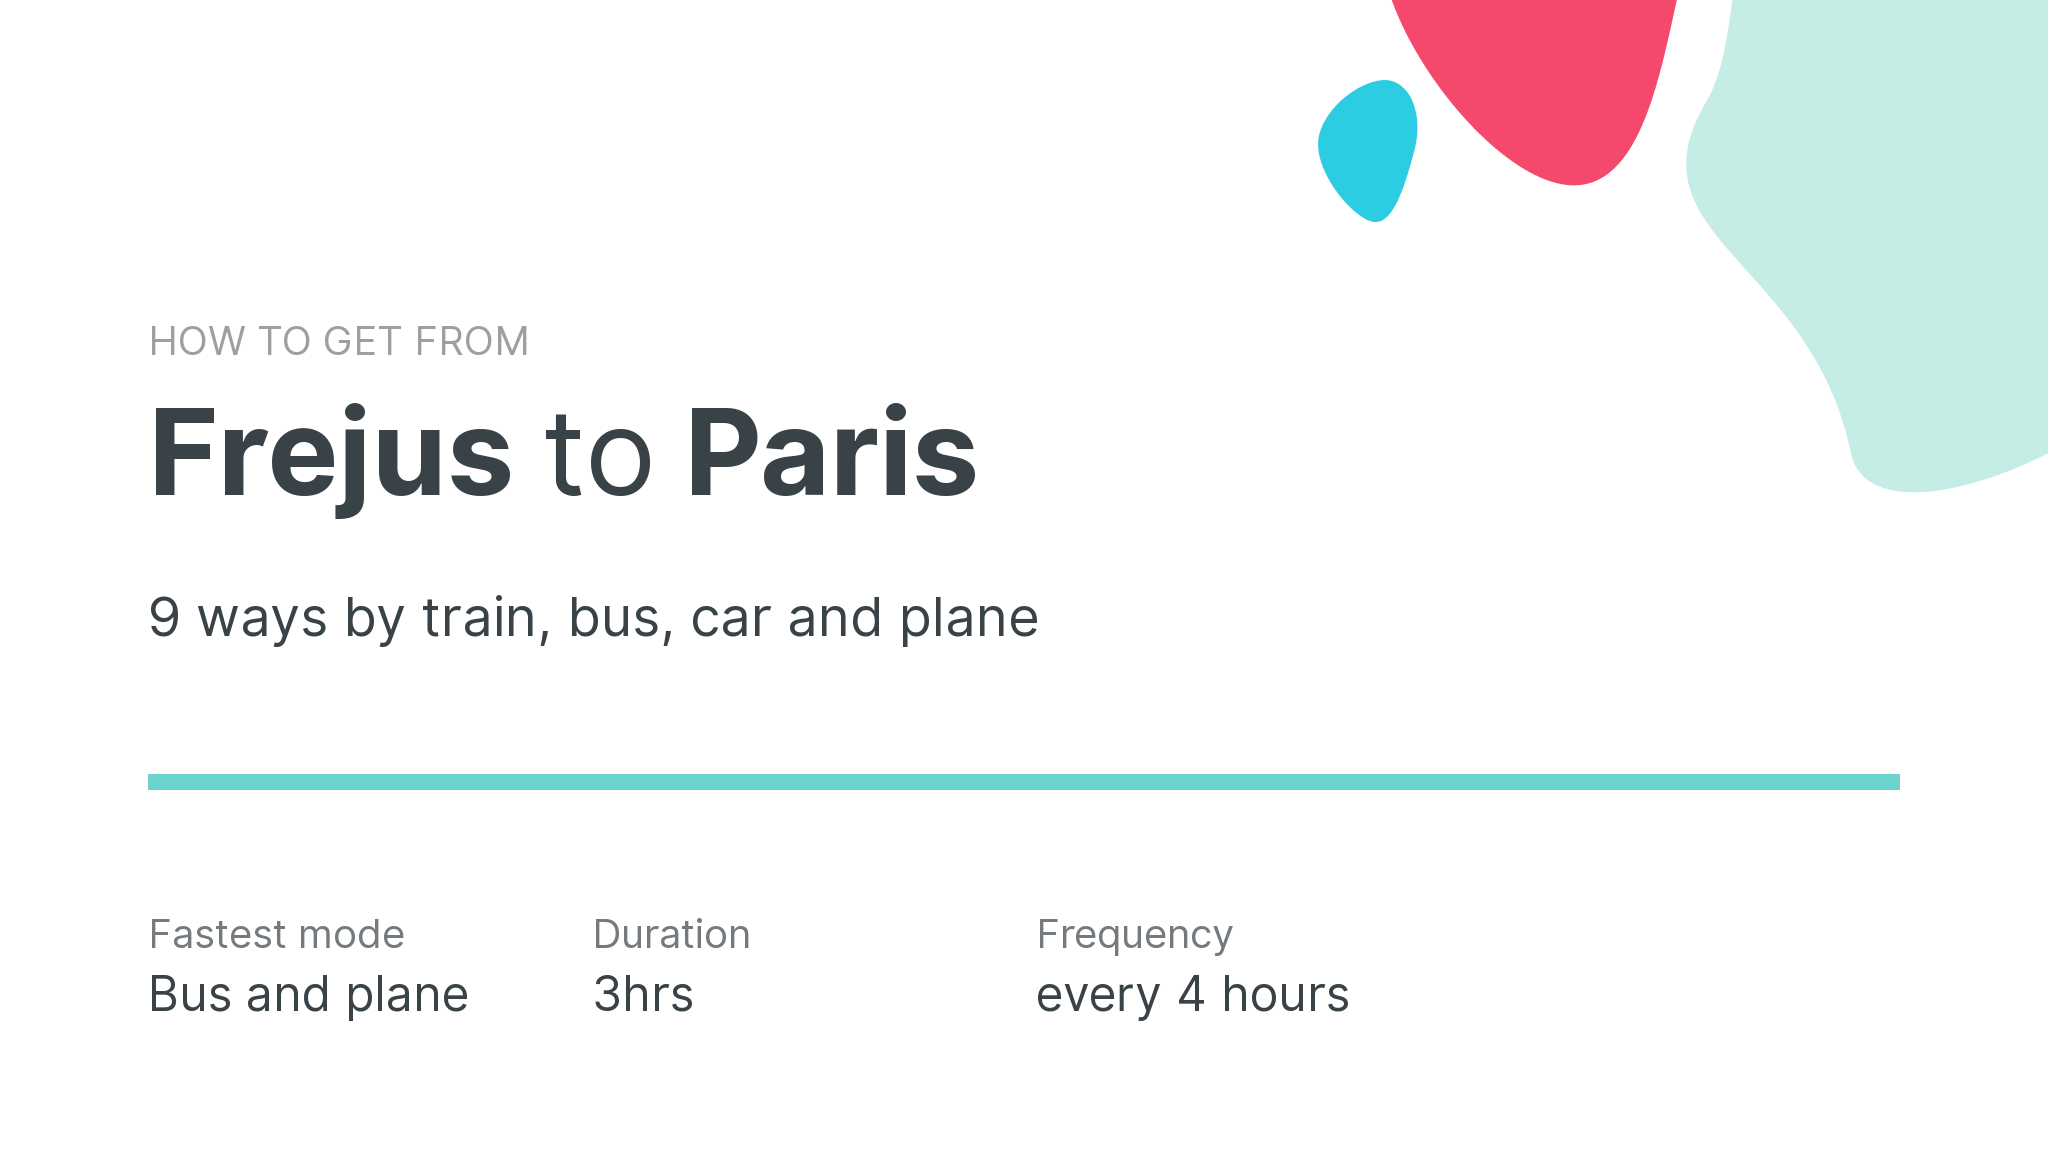 How do I get from Frejus to Paris